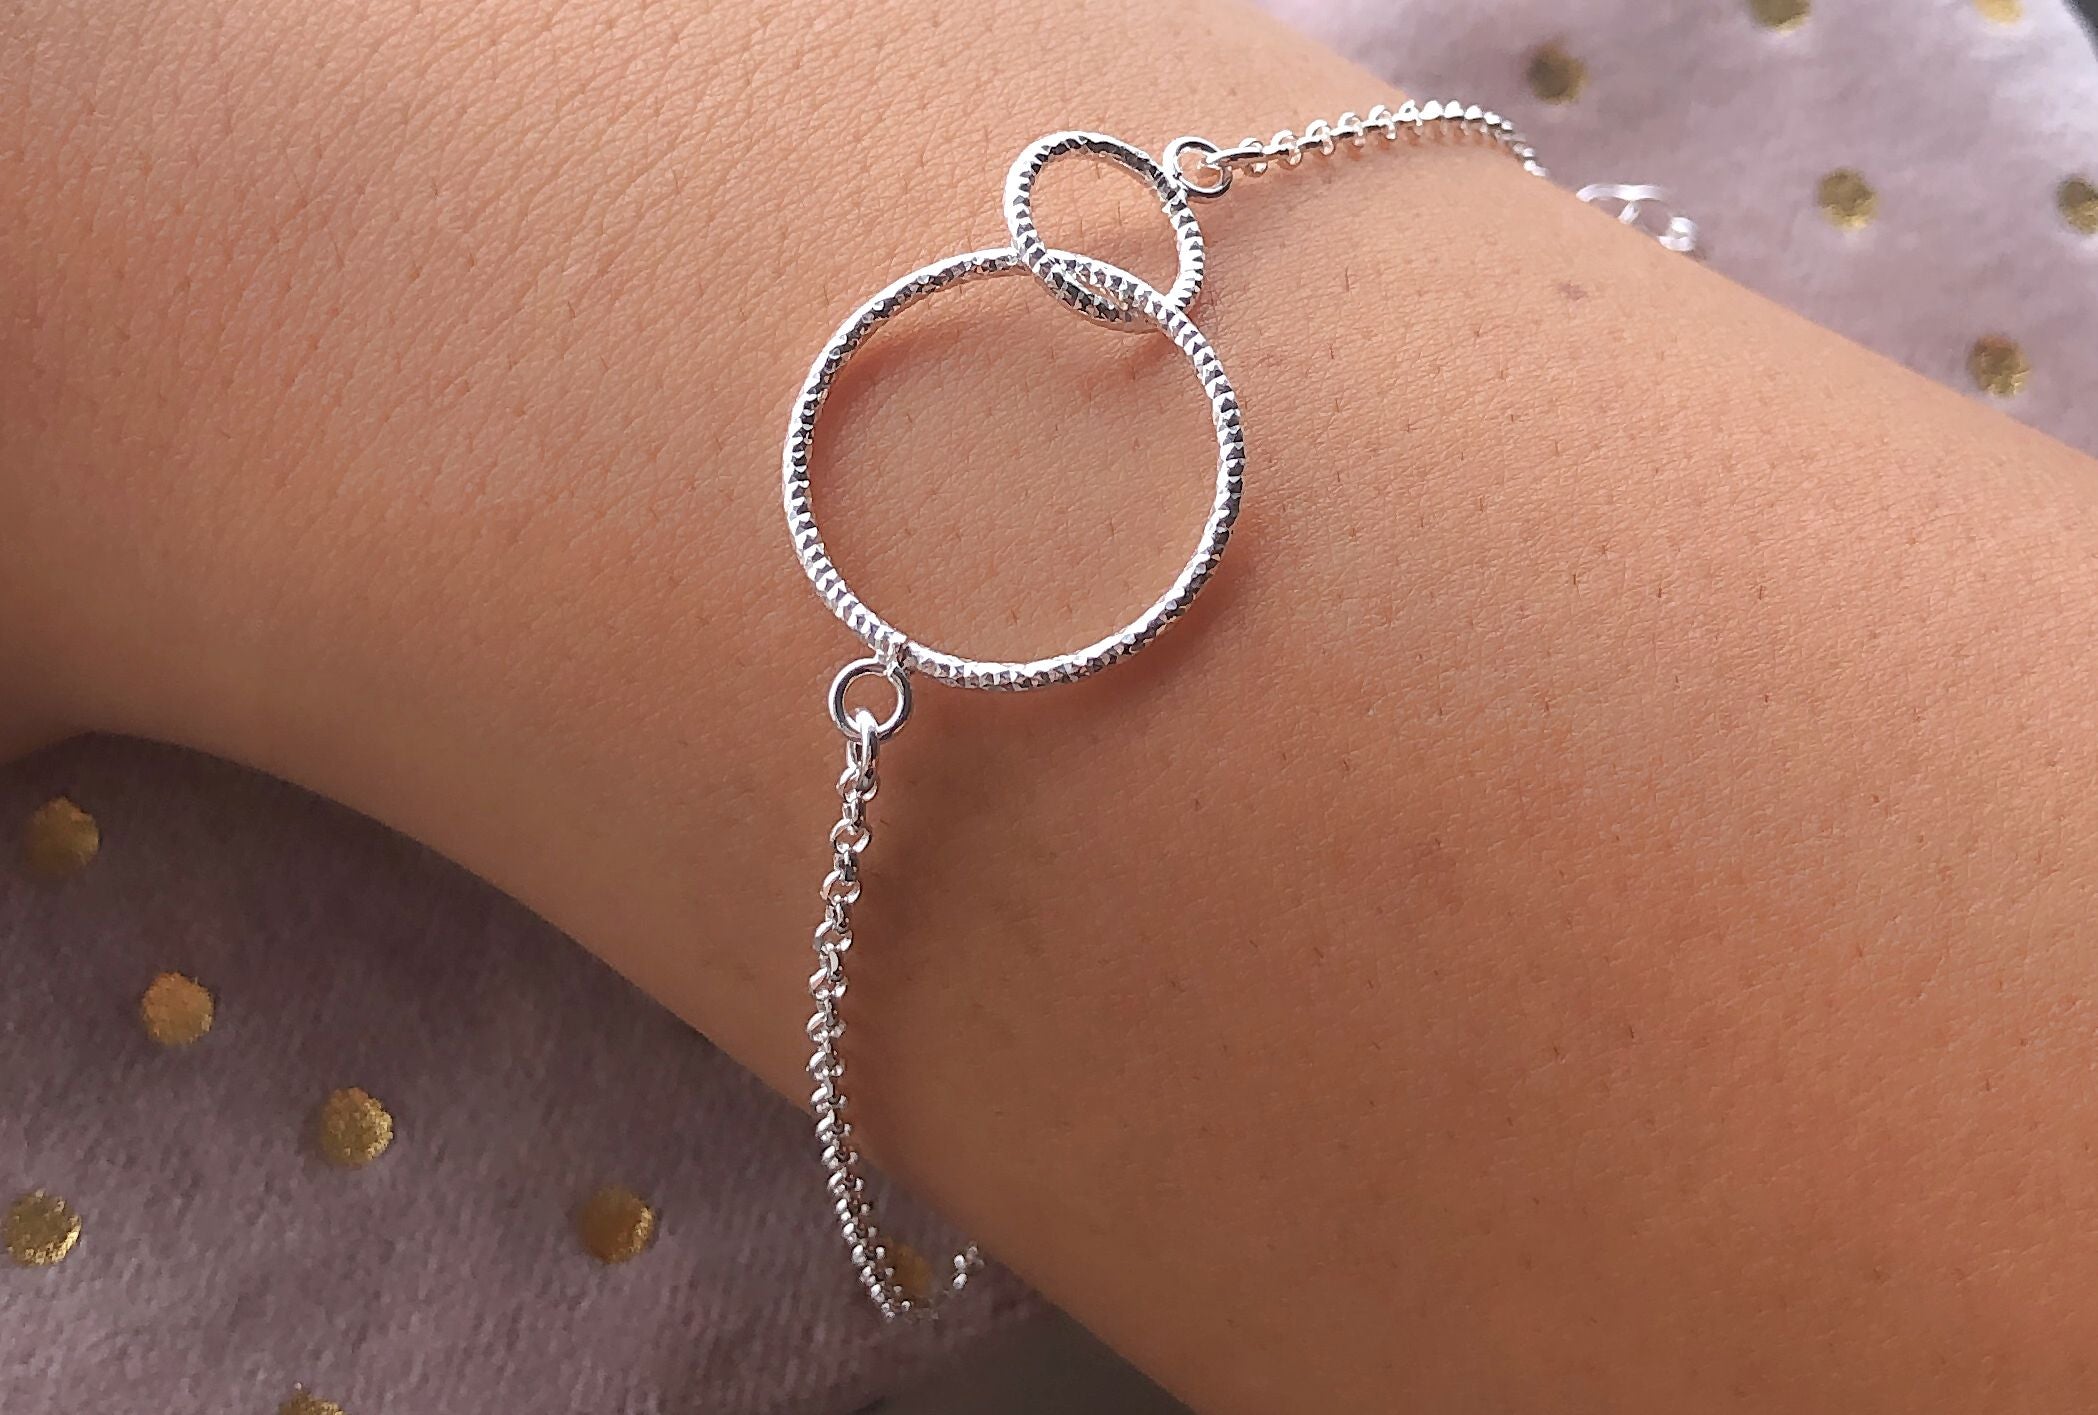 Ein Armband aus Silber aus einer Ankerkette mit zwei ineinander greifenden Kreisen, getragen am Handgelenk einer Dame.